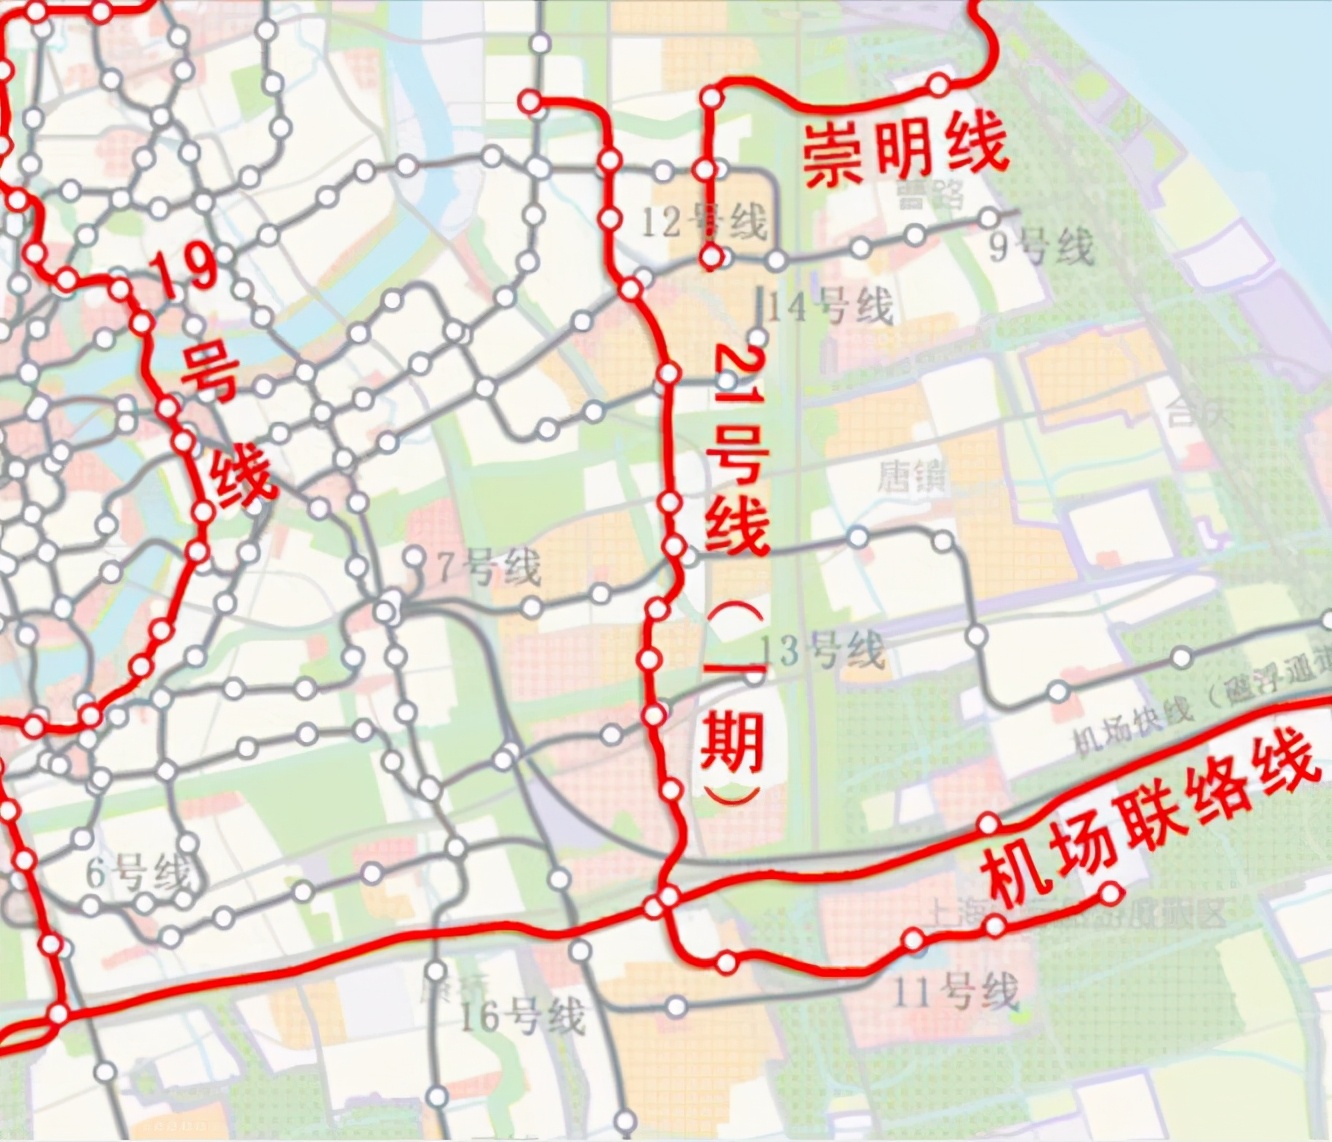 上海地铁21号线站点图图片